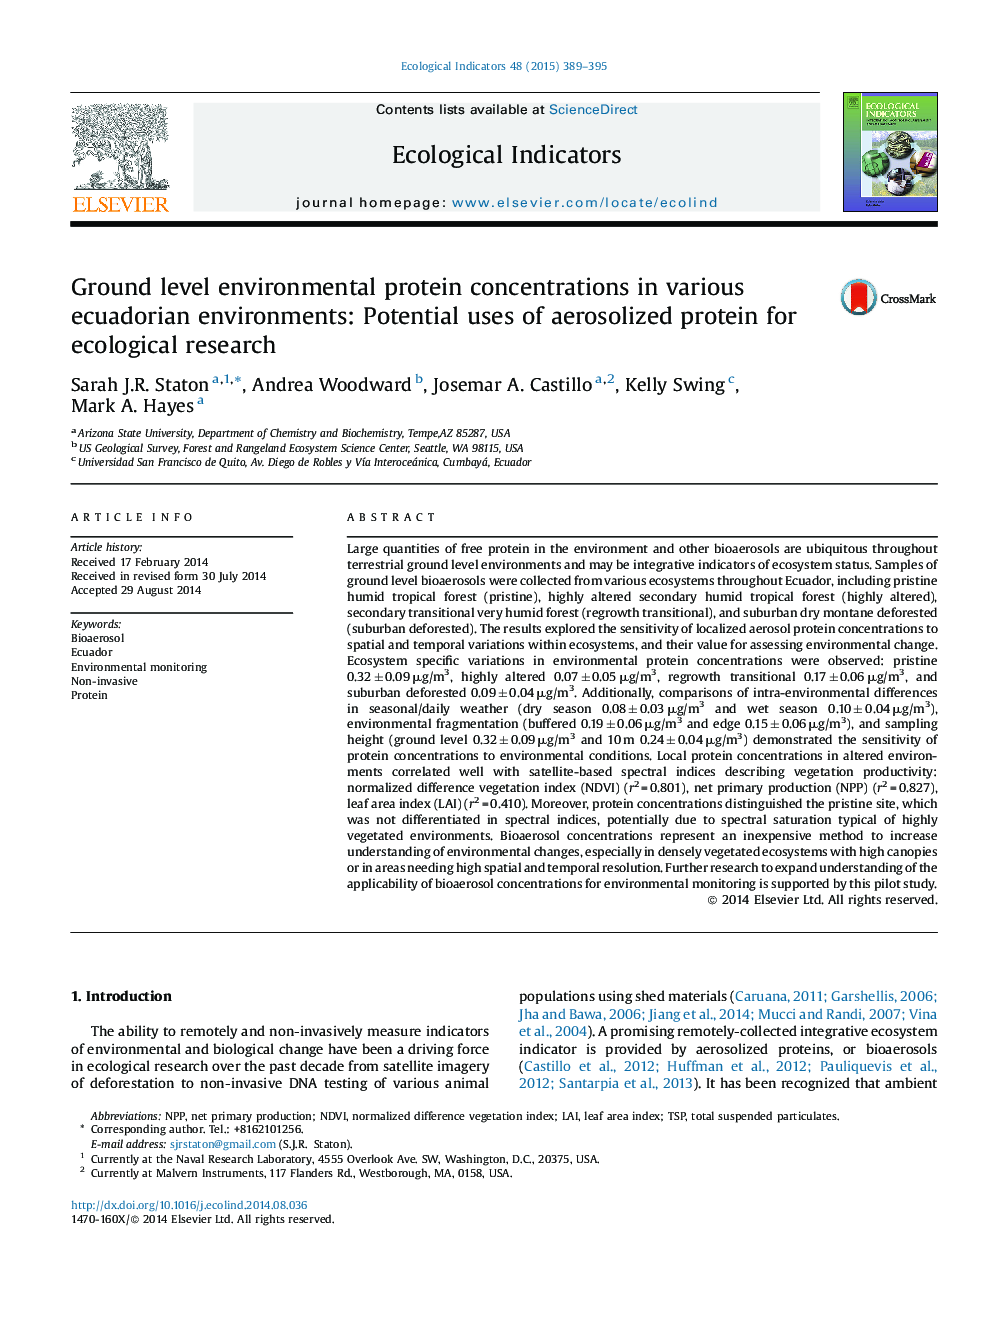 غلظت پروتئین های محیطی در سطح زمین در محیط های مختلف اکوادور: استفاده های بالقوه از پروتئین های ایزوله برای تحقیقات بوم شناختی 